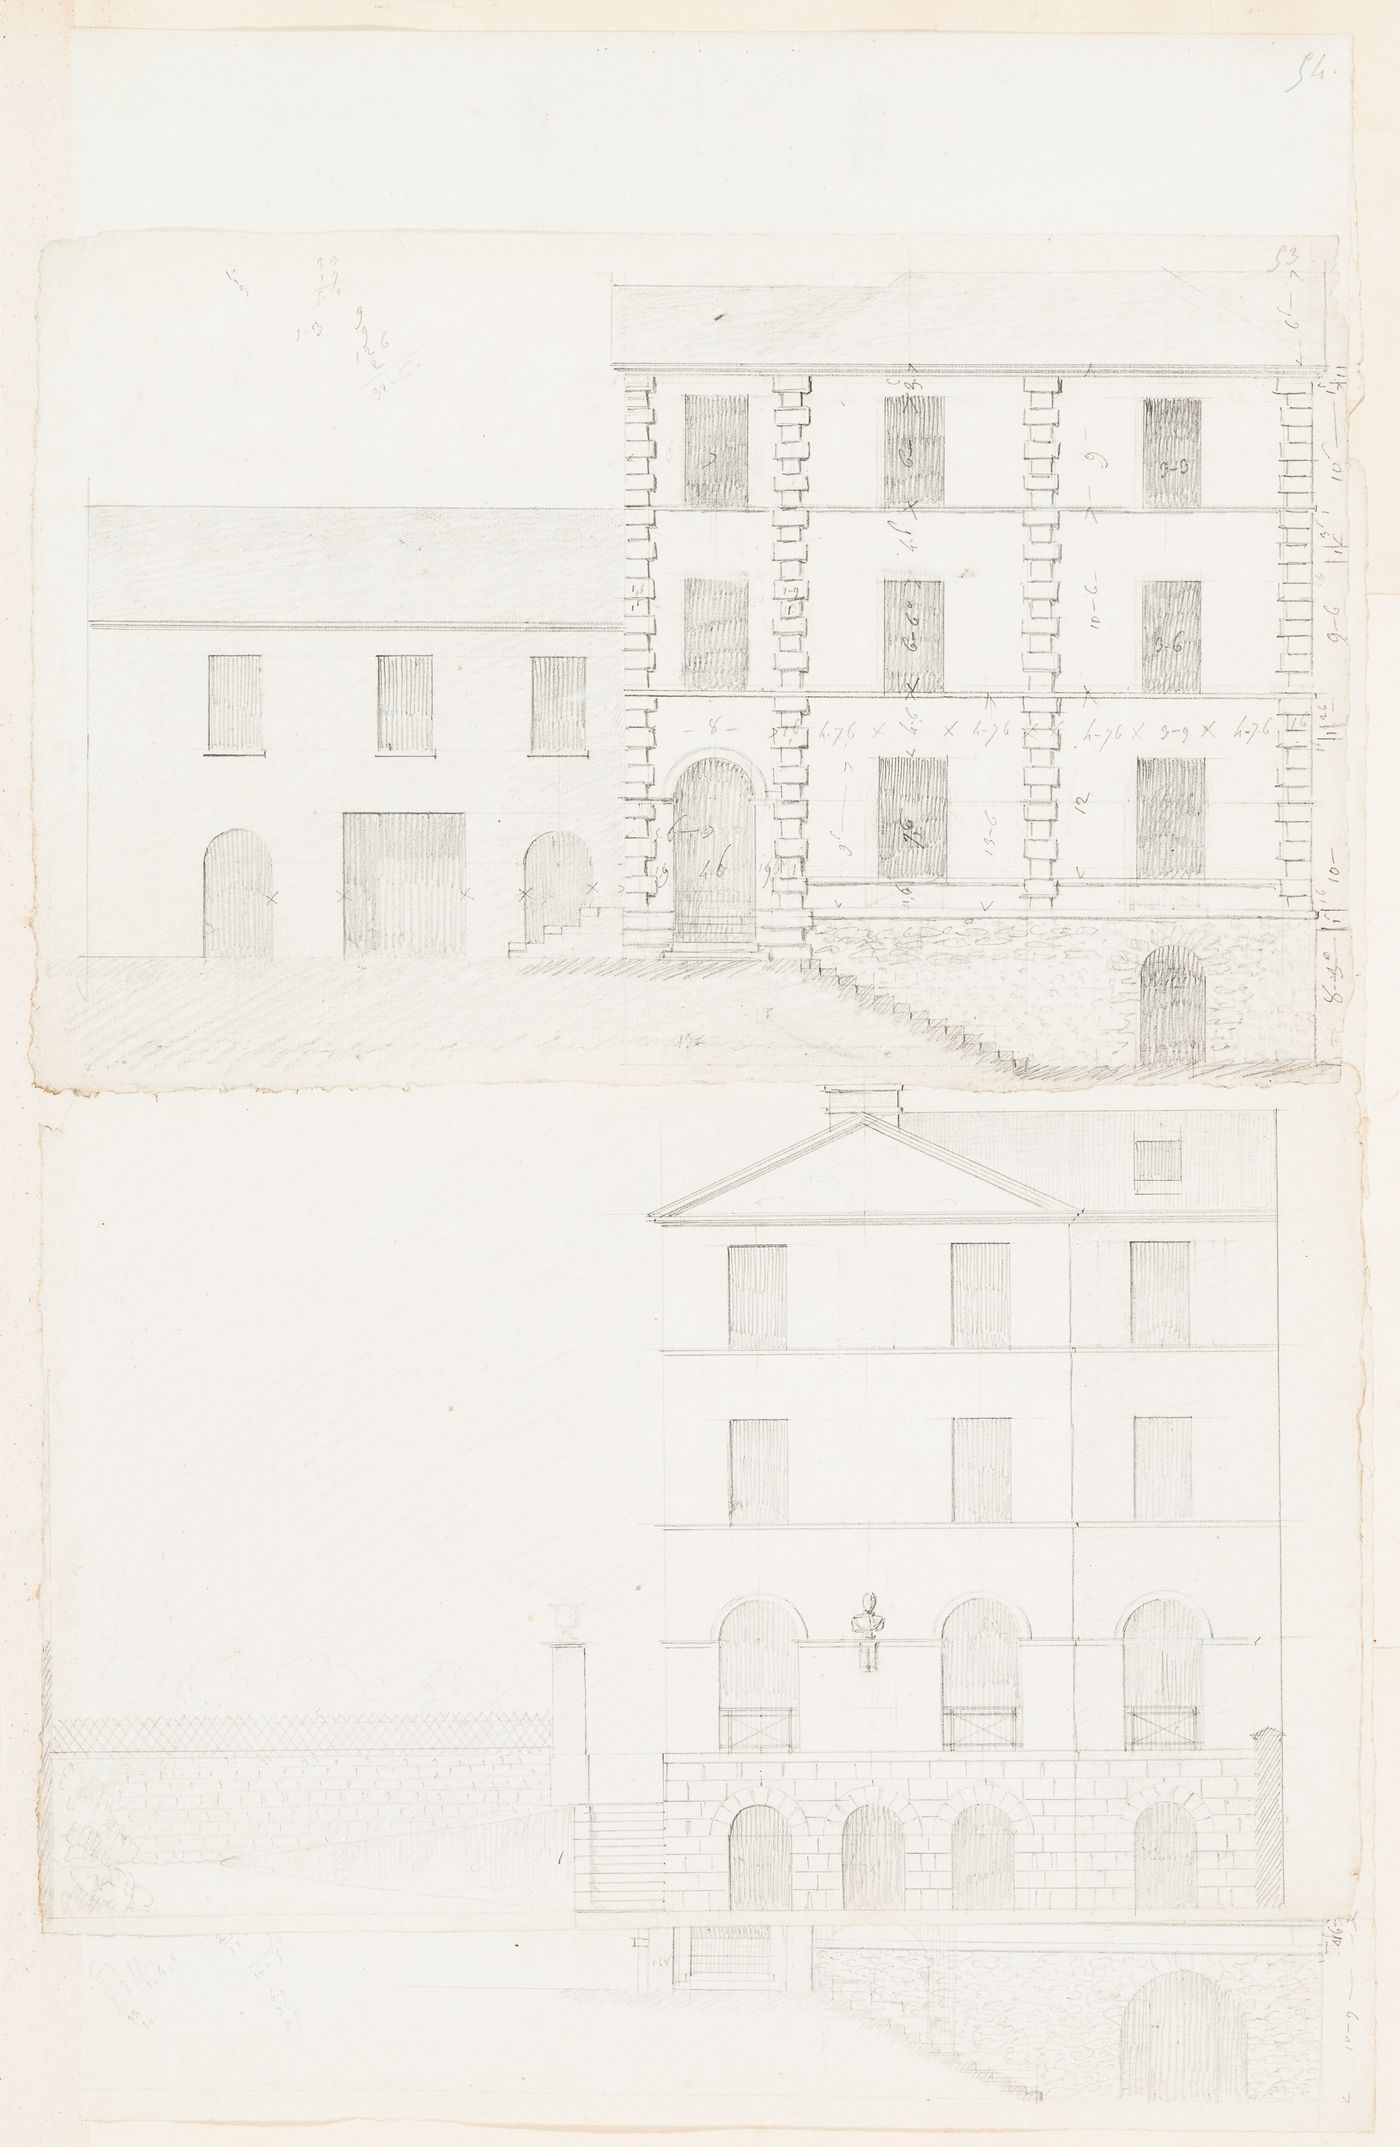 Rohault de Fleury House, 12-14 rue d'Aguesseau, Paris: Elevation for the principal façade